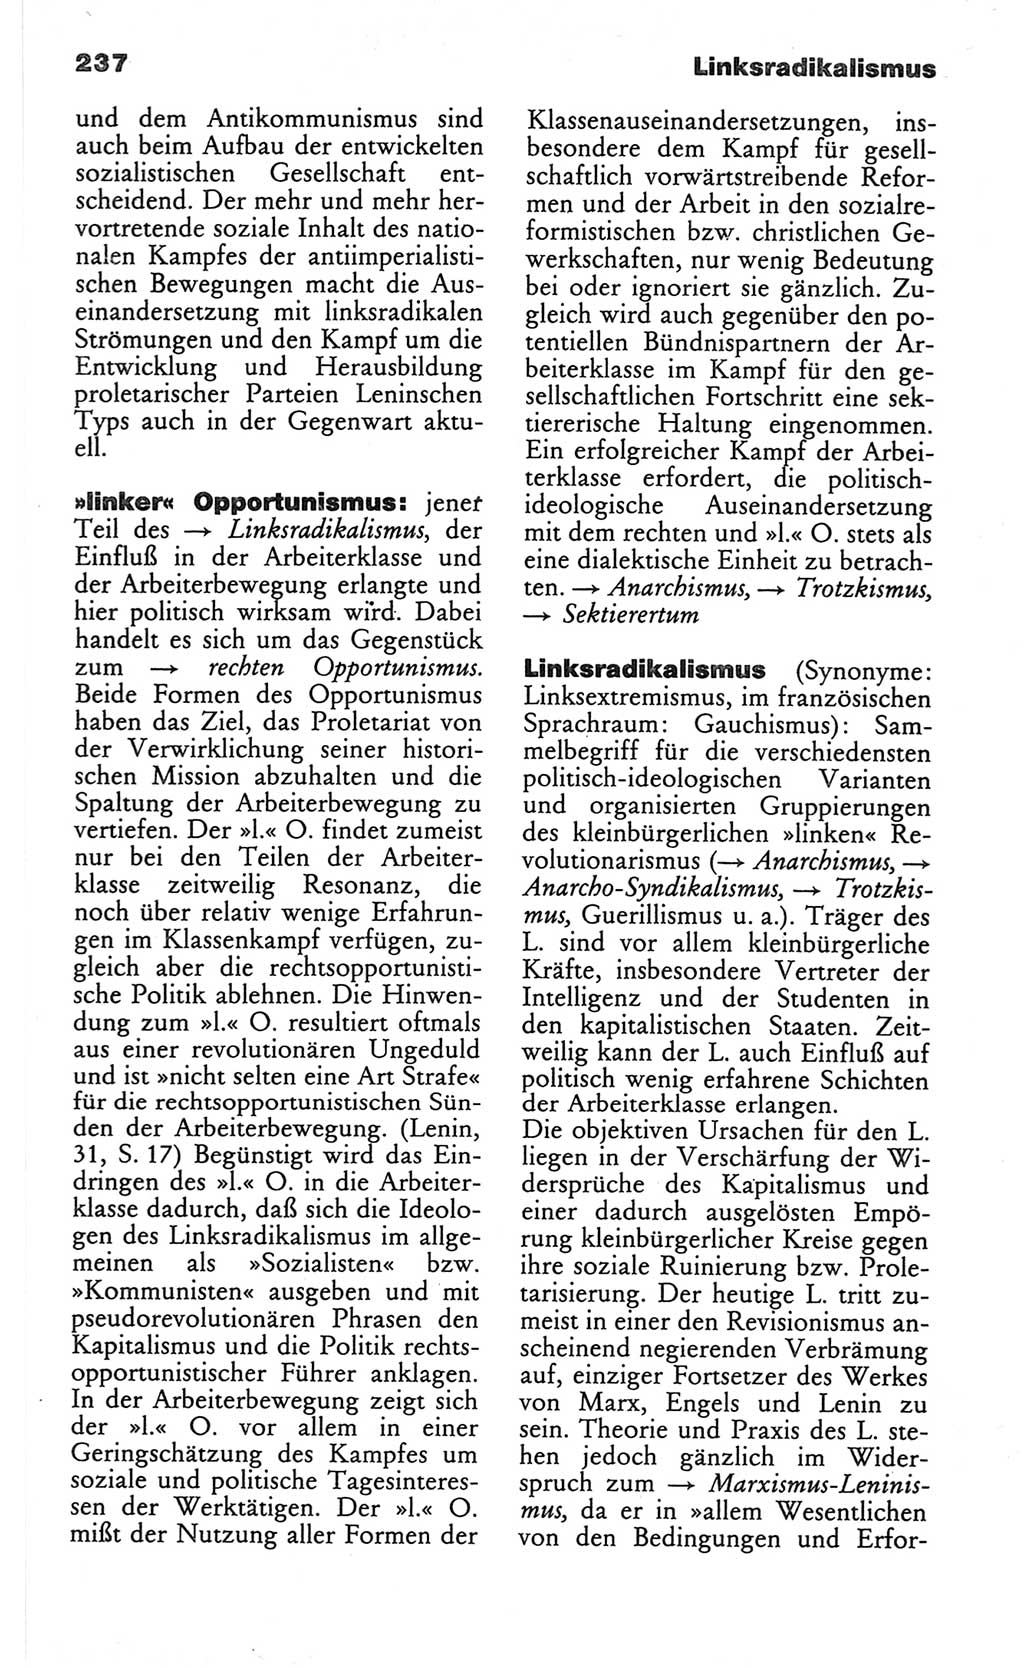 Wörterbuch des wissenschaftlichen Kommunismus [Deutsche Demokratische Republik (DDR)] 1982, Seite 237 (Wb. wiss. Komm. DDR 1982, S. 237)